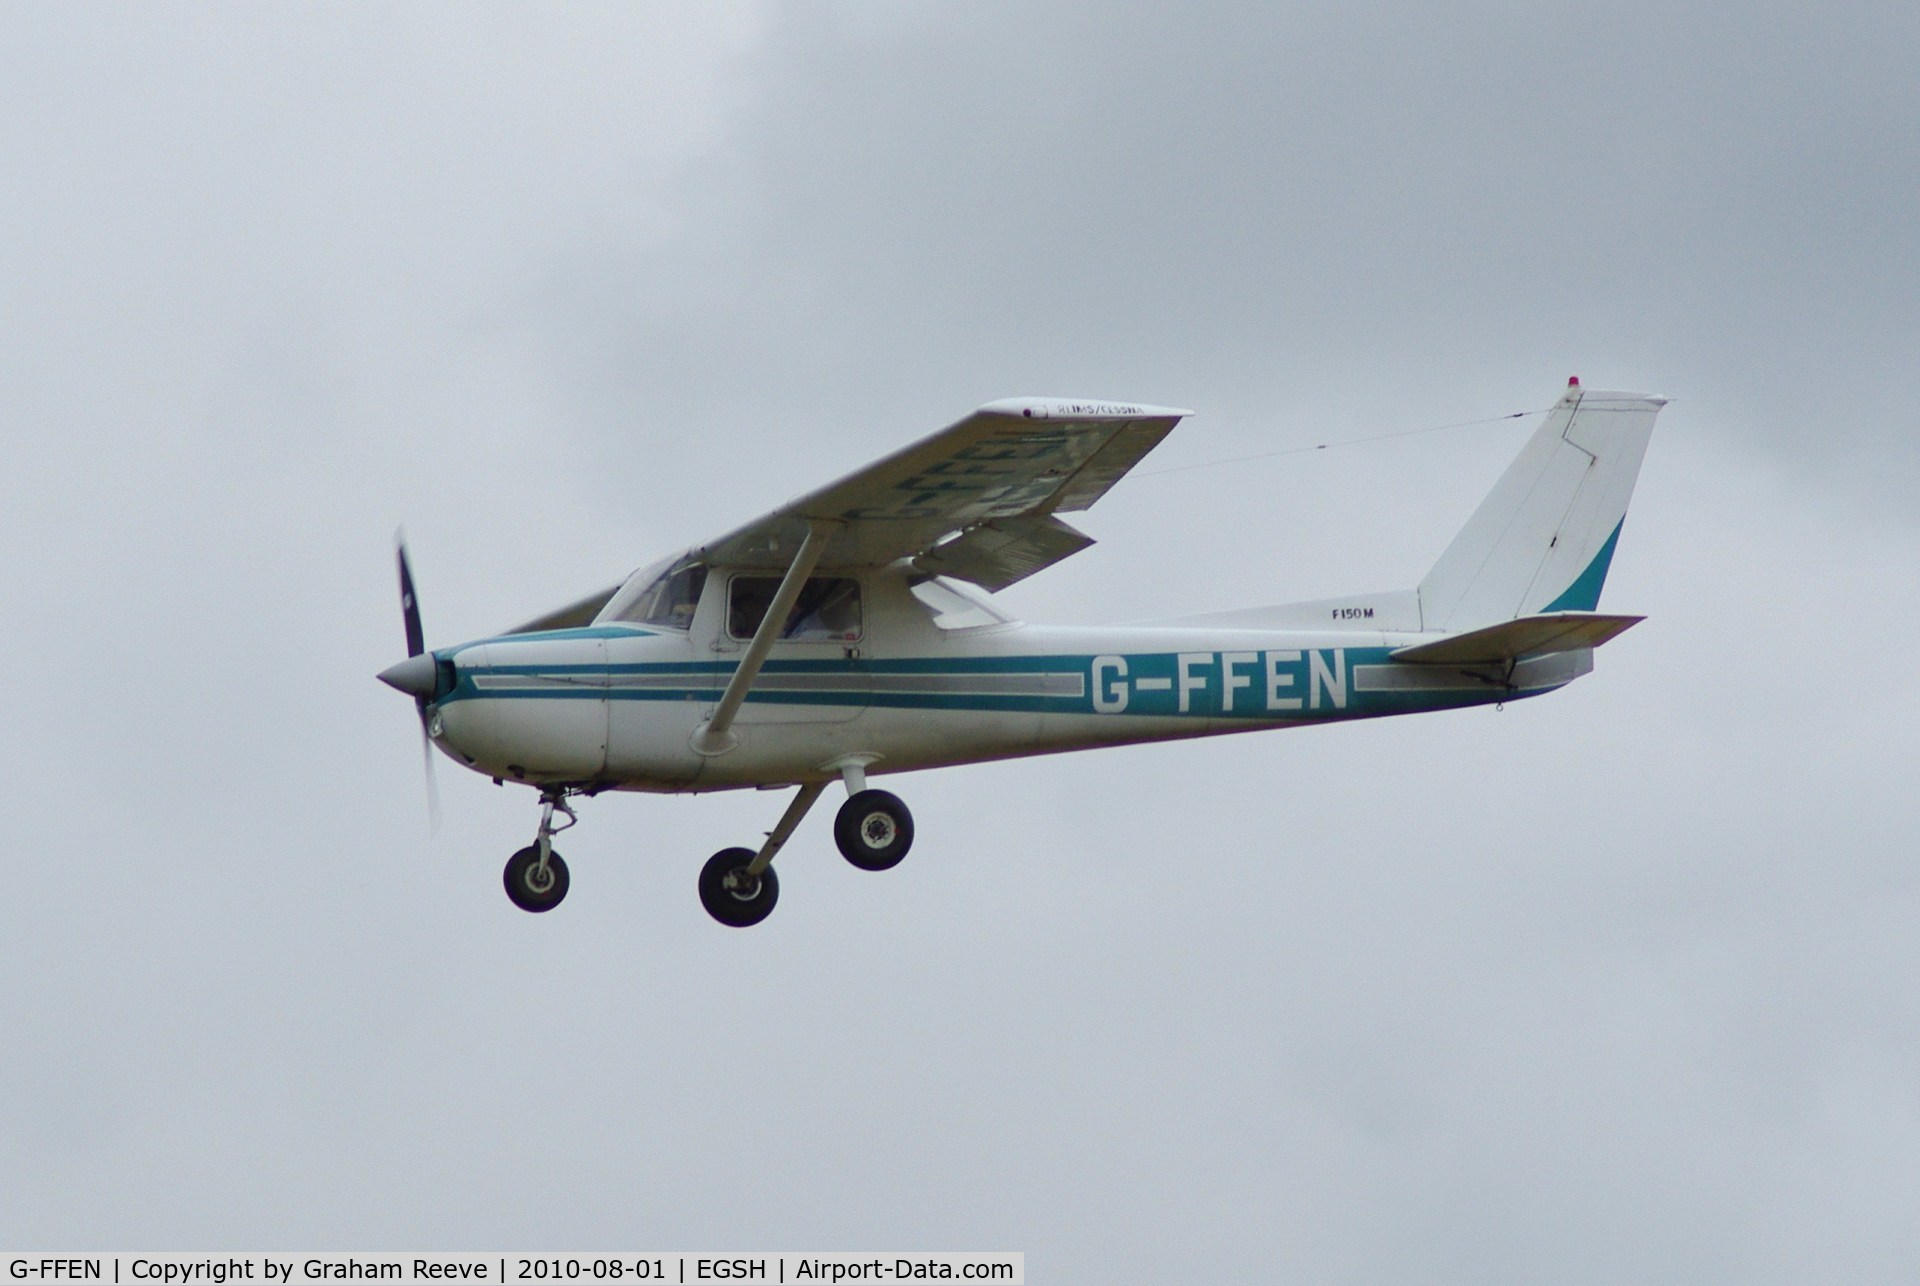 G-FFEN, 1975 Reims F150M C/N 1204, Landing at Norwich.